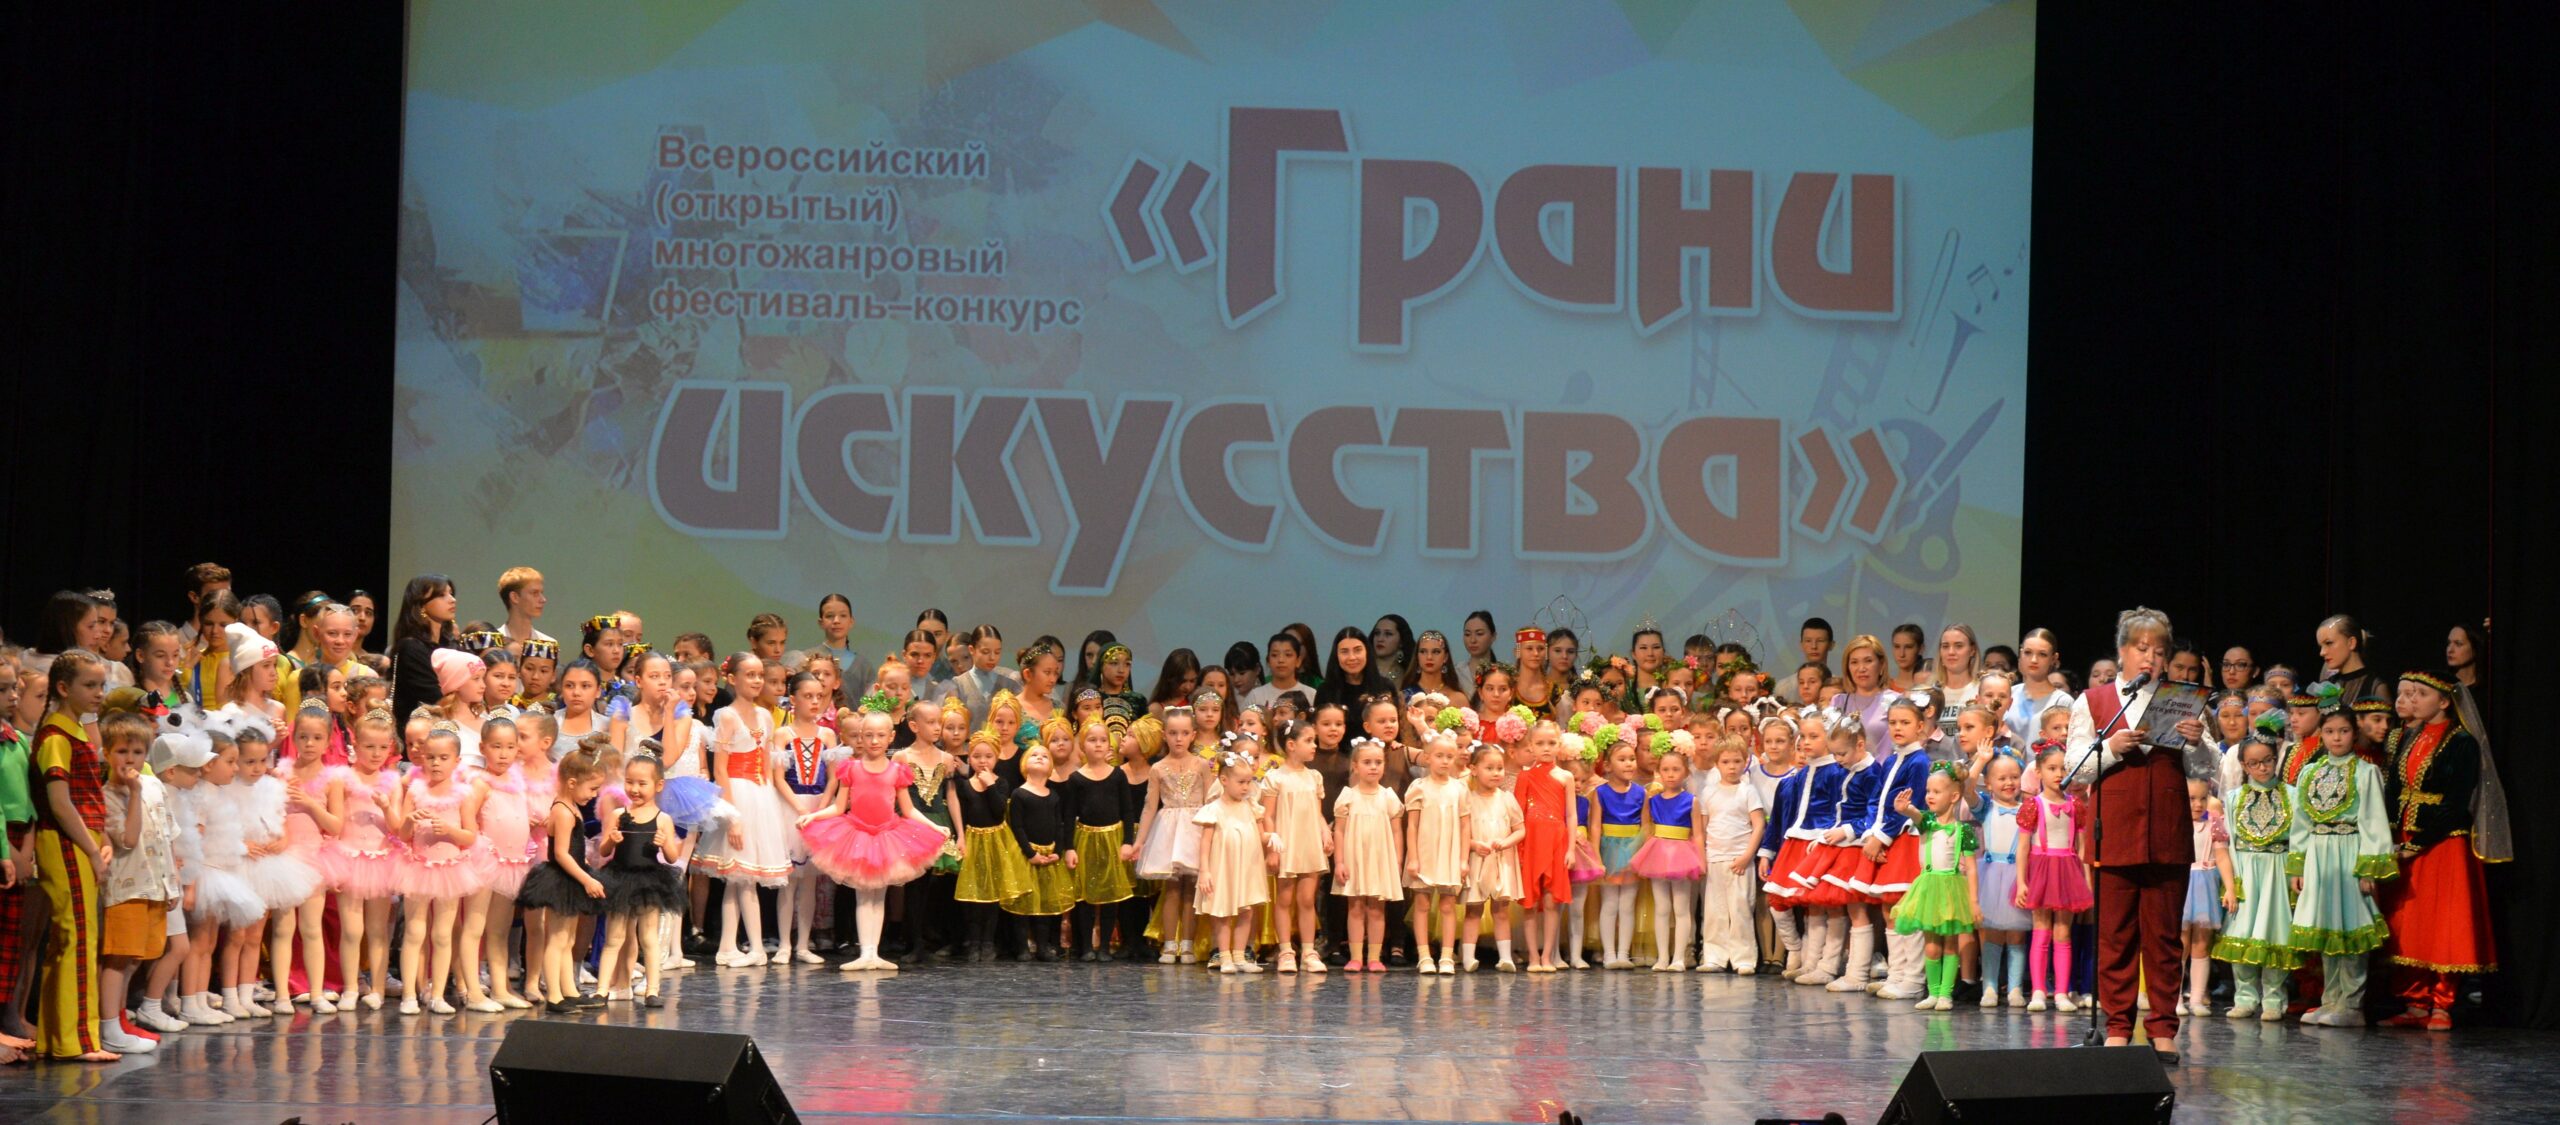 Фестиваль «Грани искусства»: многообразие творчества и таланта в Астрахани